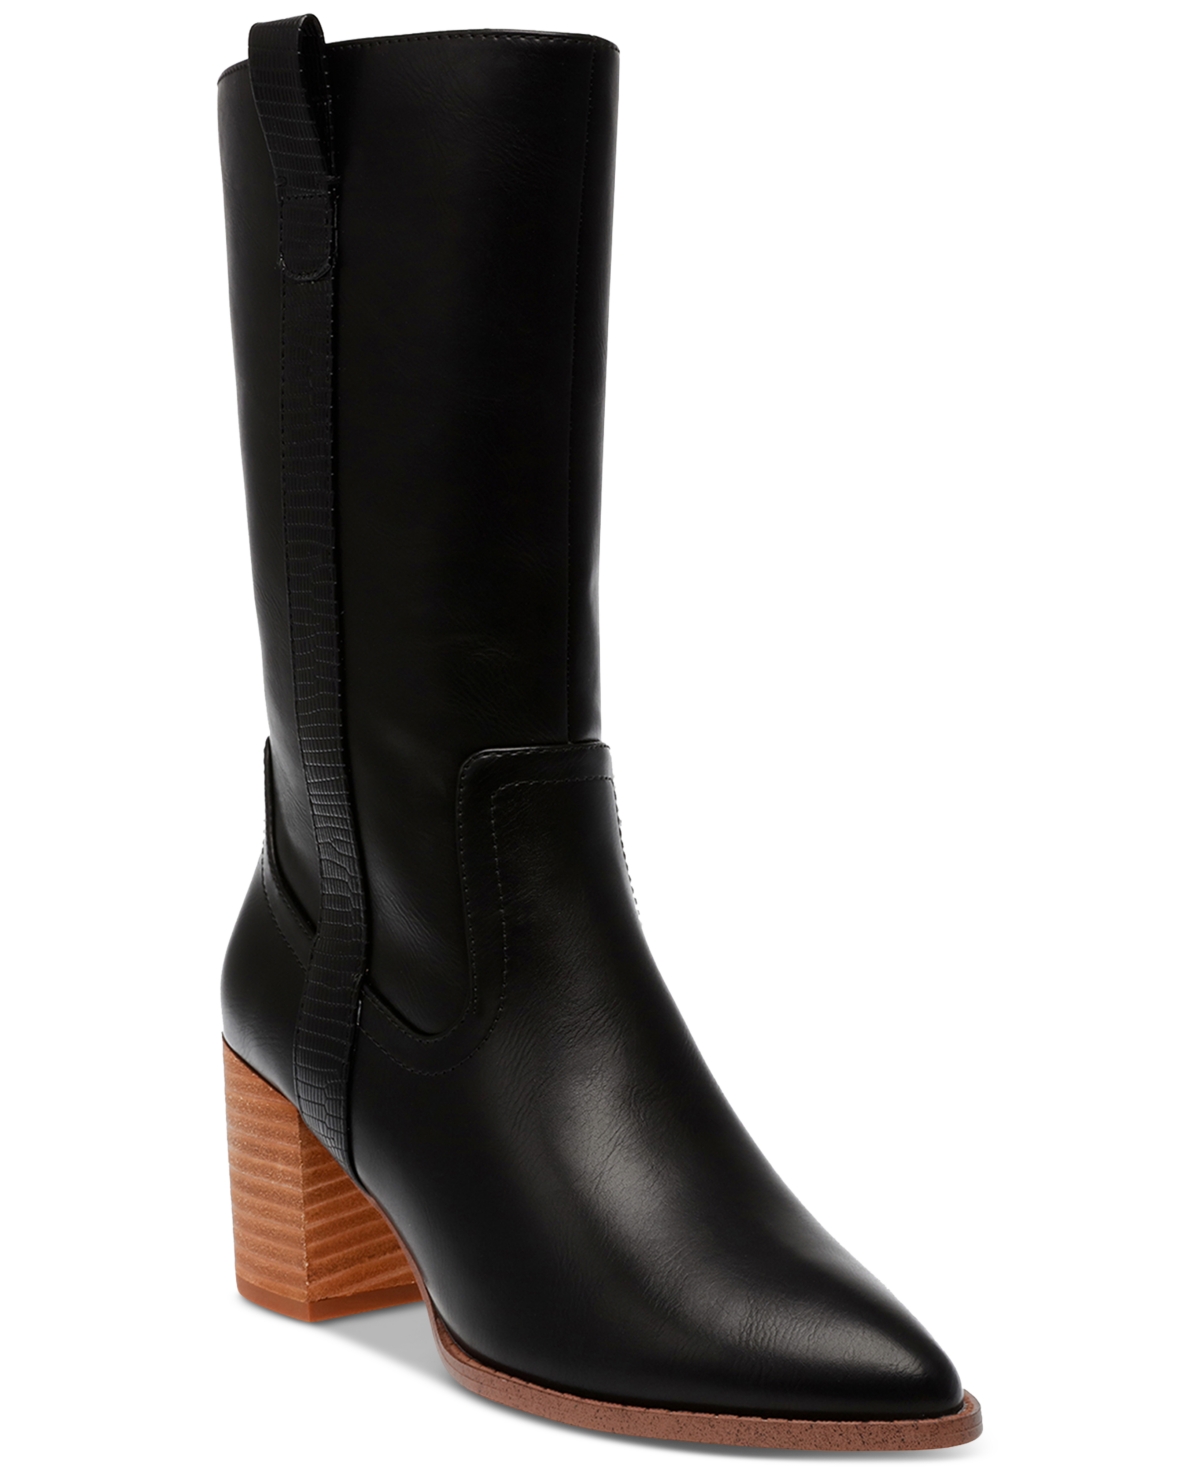 Women's Tezza Block Heel Boots - Black